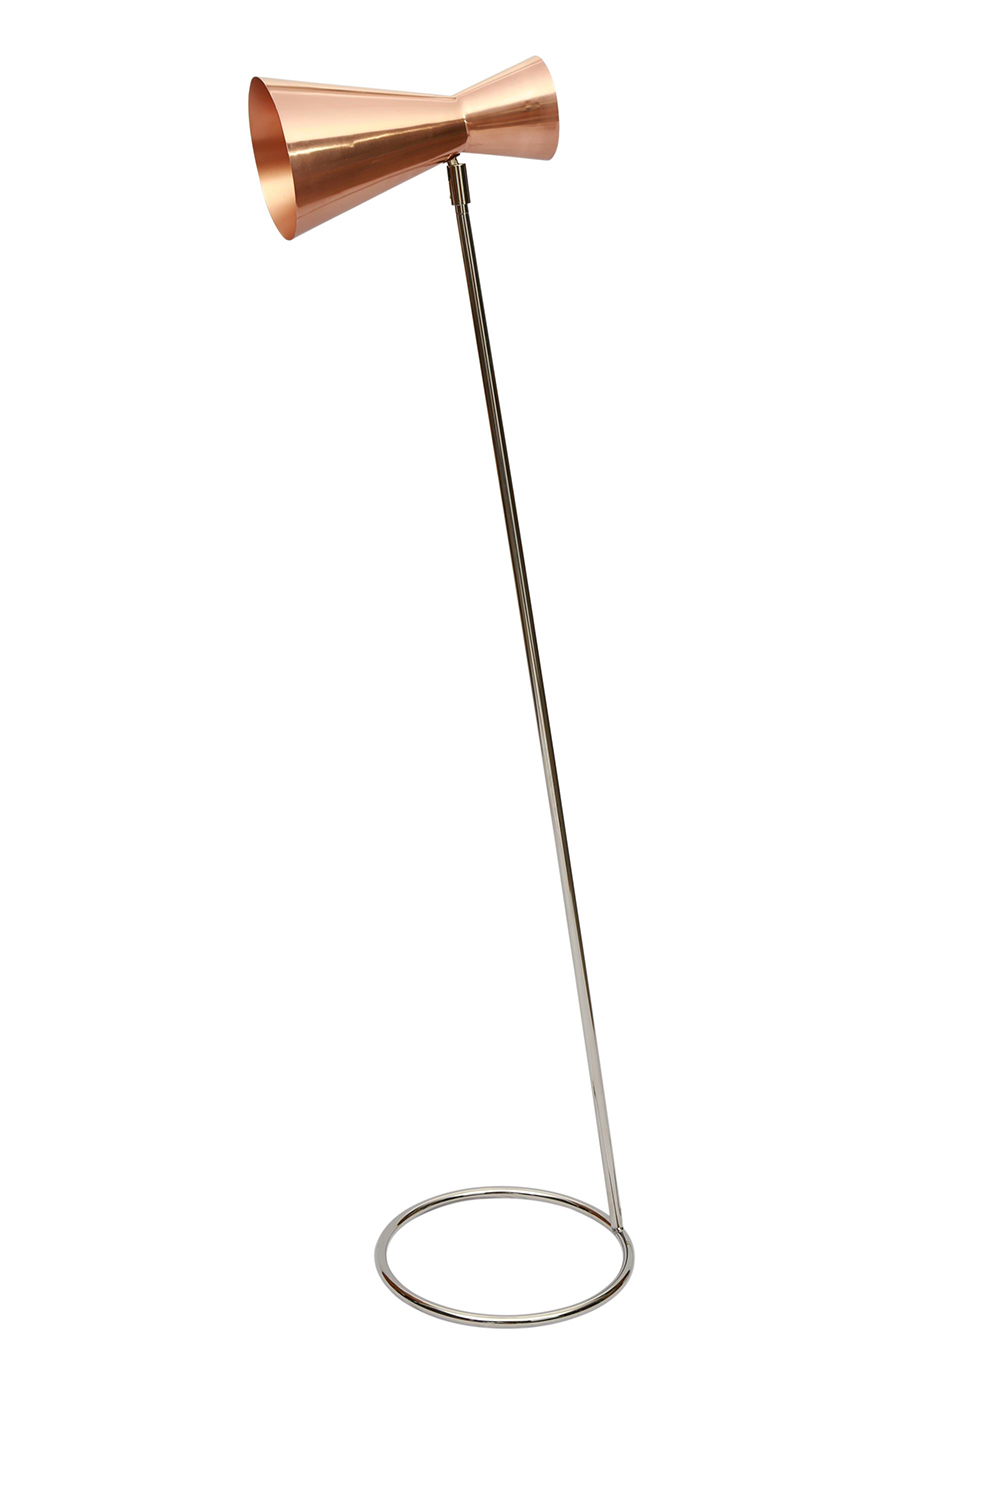 Ren-Wil True Balance Floor Lamp - Copper Plated